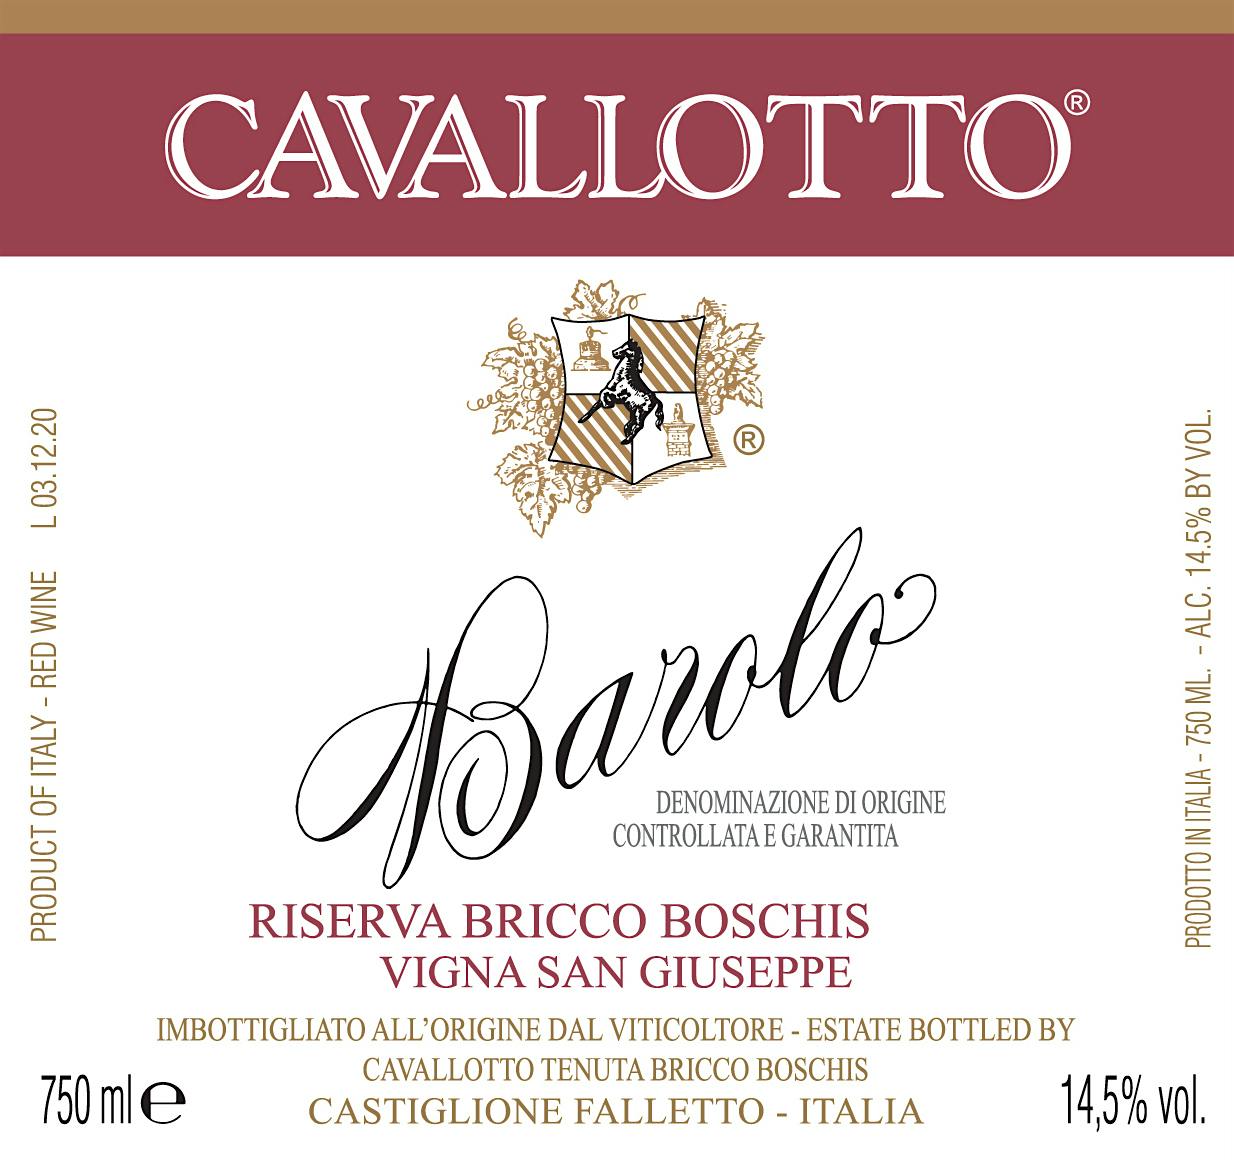 Label for Cavallotto